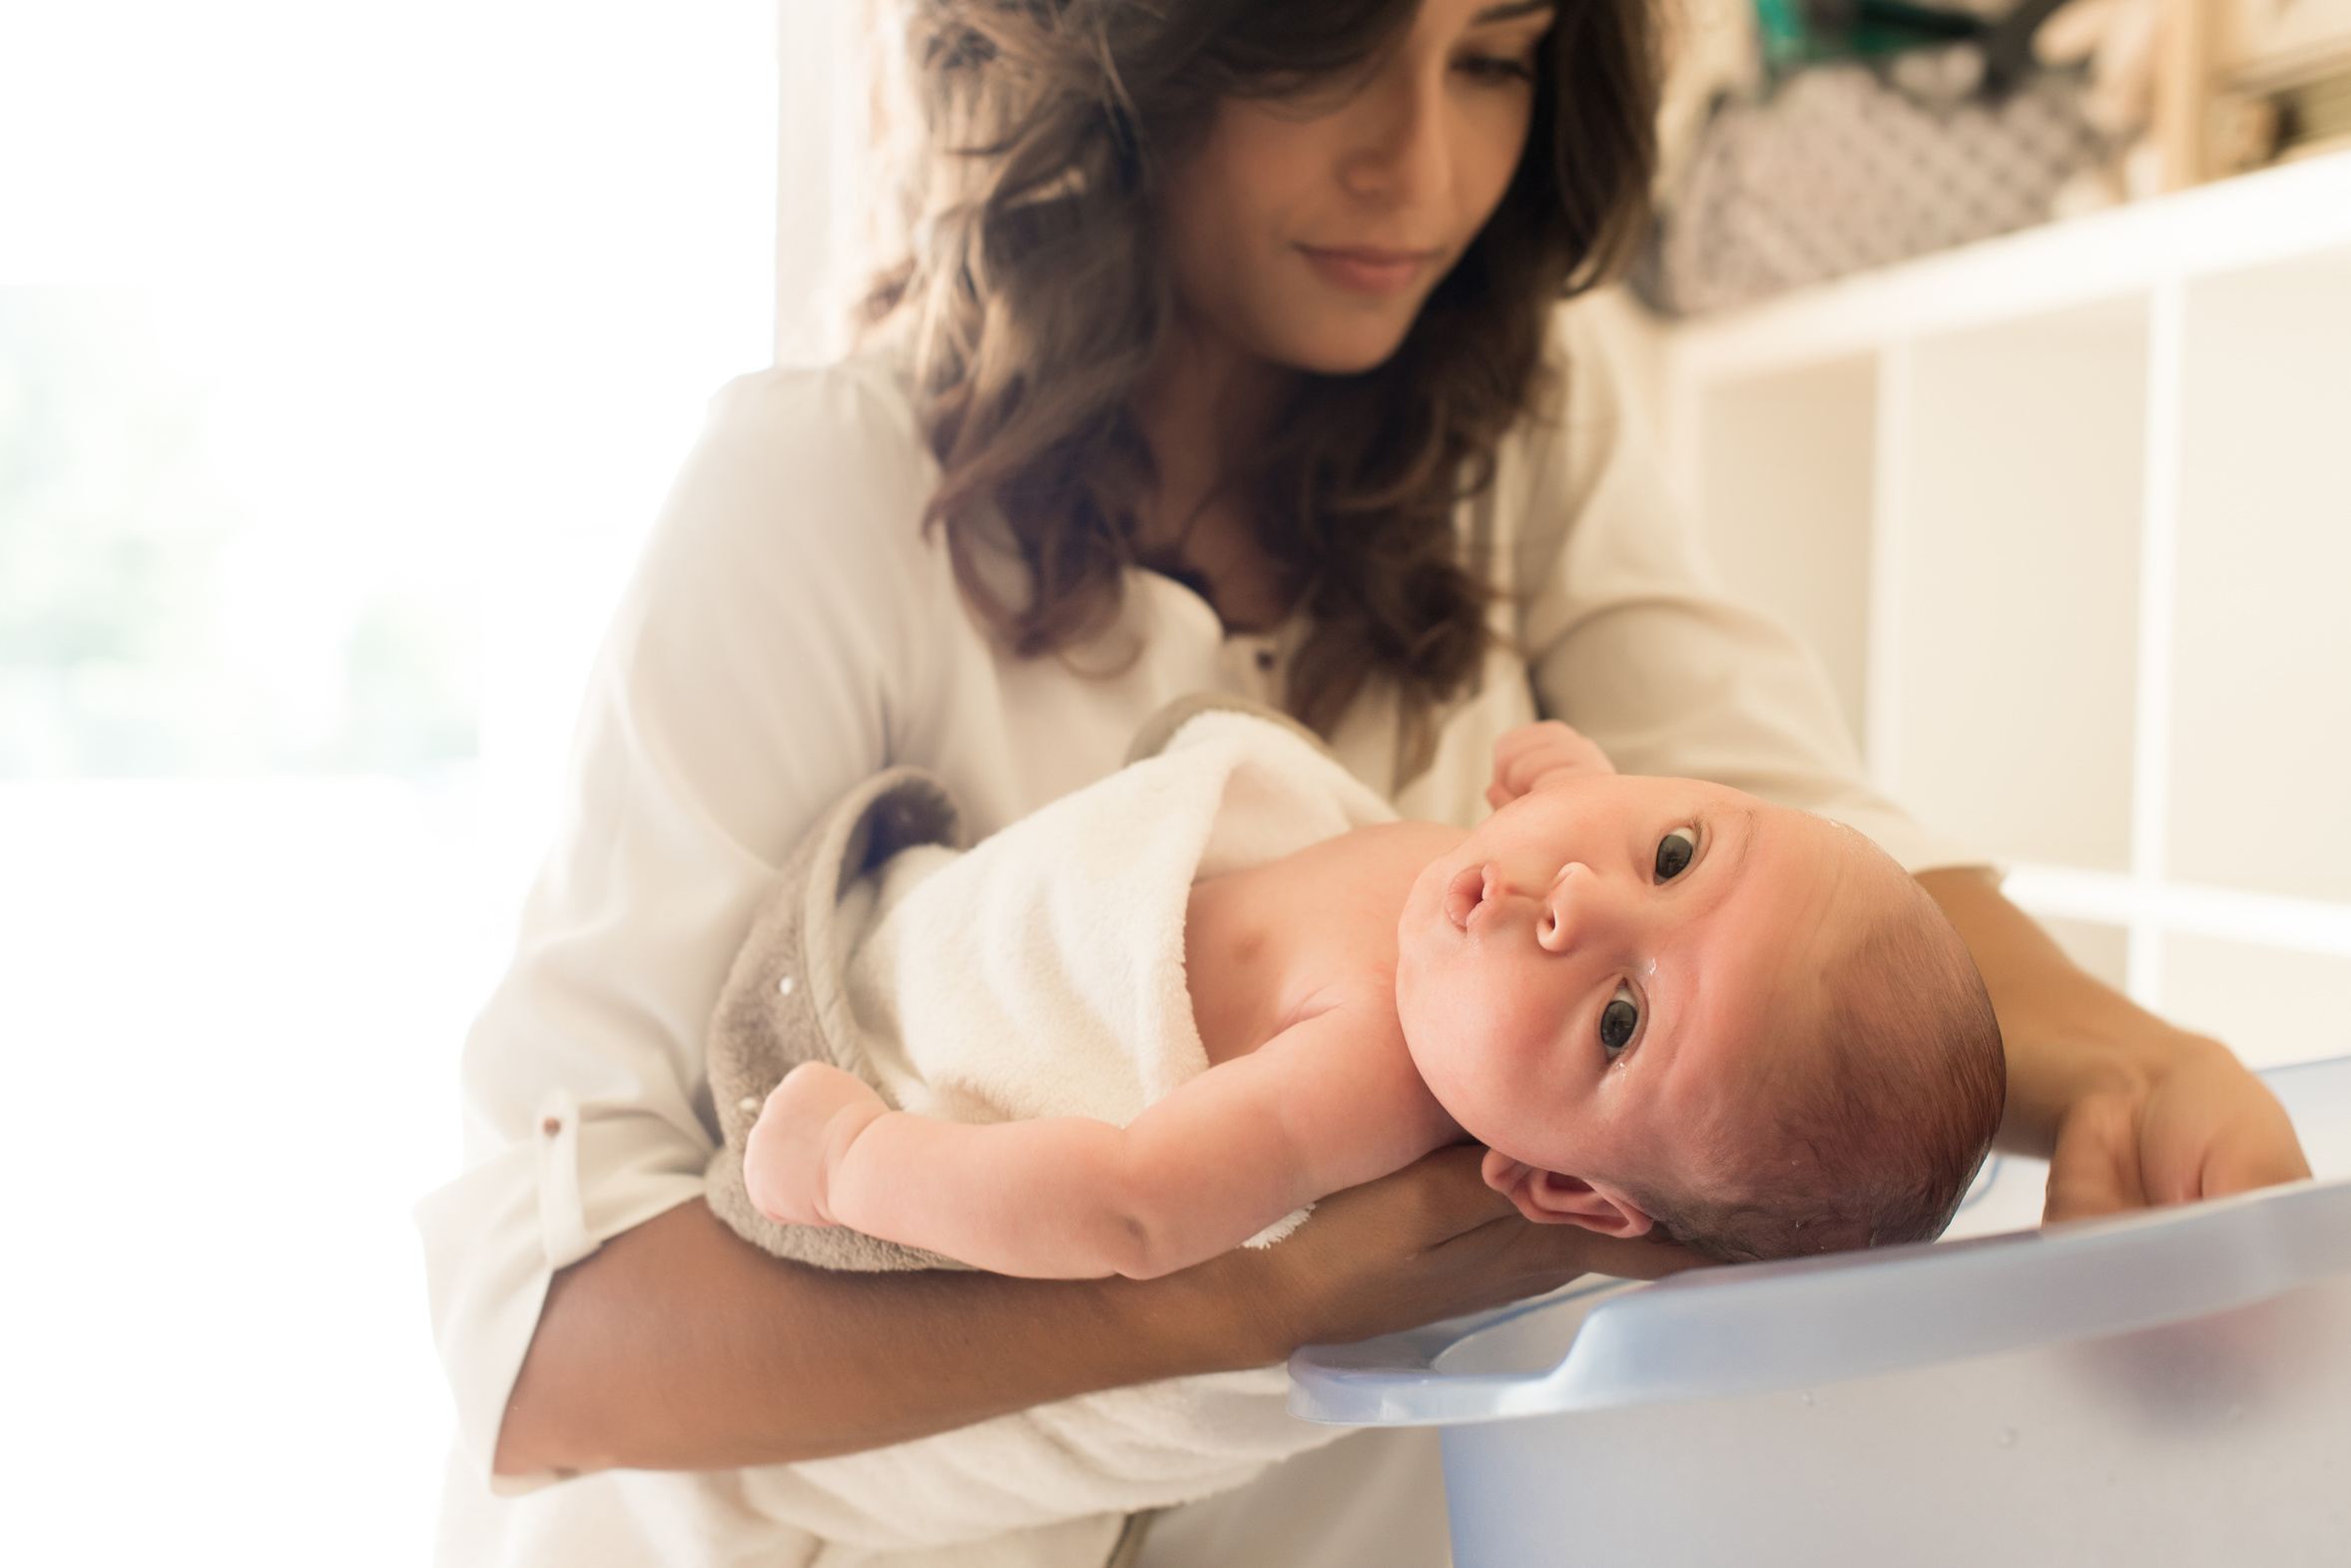 higiena dziecka i noworodka pielęgnacja całego ciała